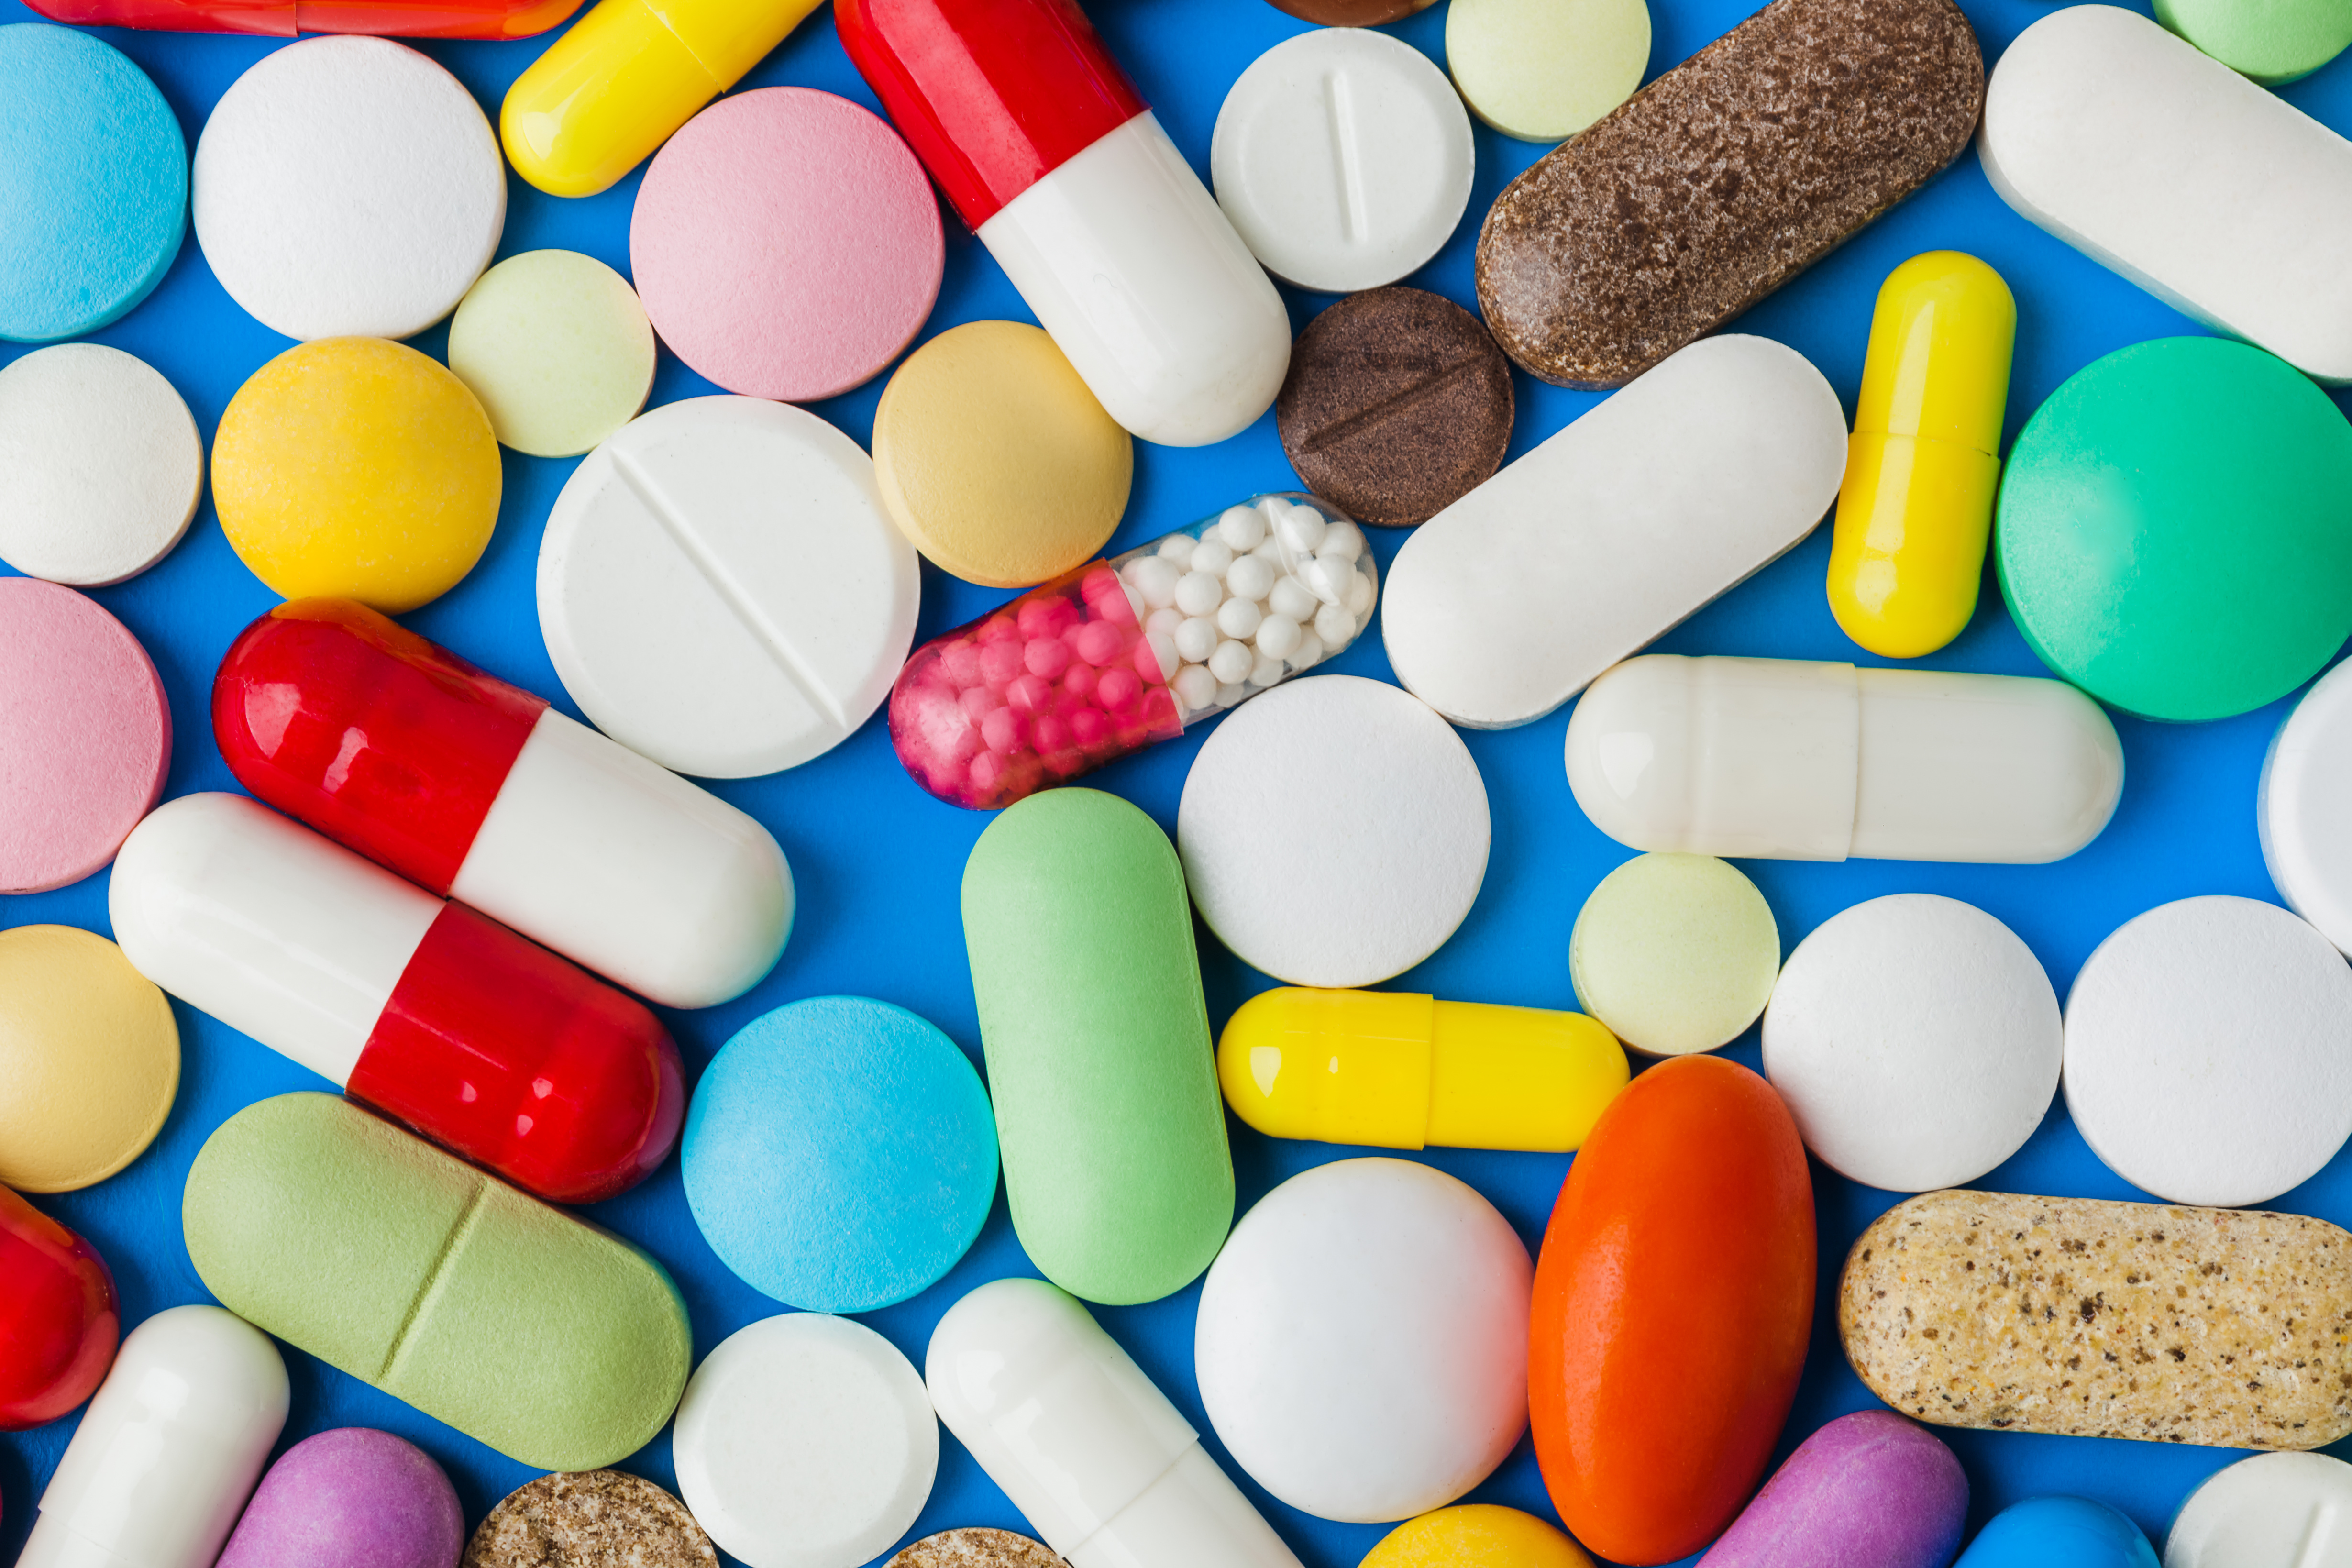 Cent-douze médicaments autorisés&nbsp;ont une balance bénéfice-risque insatisfaisante, selon la revue Prescrire.&nbsp;© Nikolai Sorokin,&nbsp;Adobe Stock